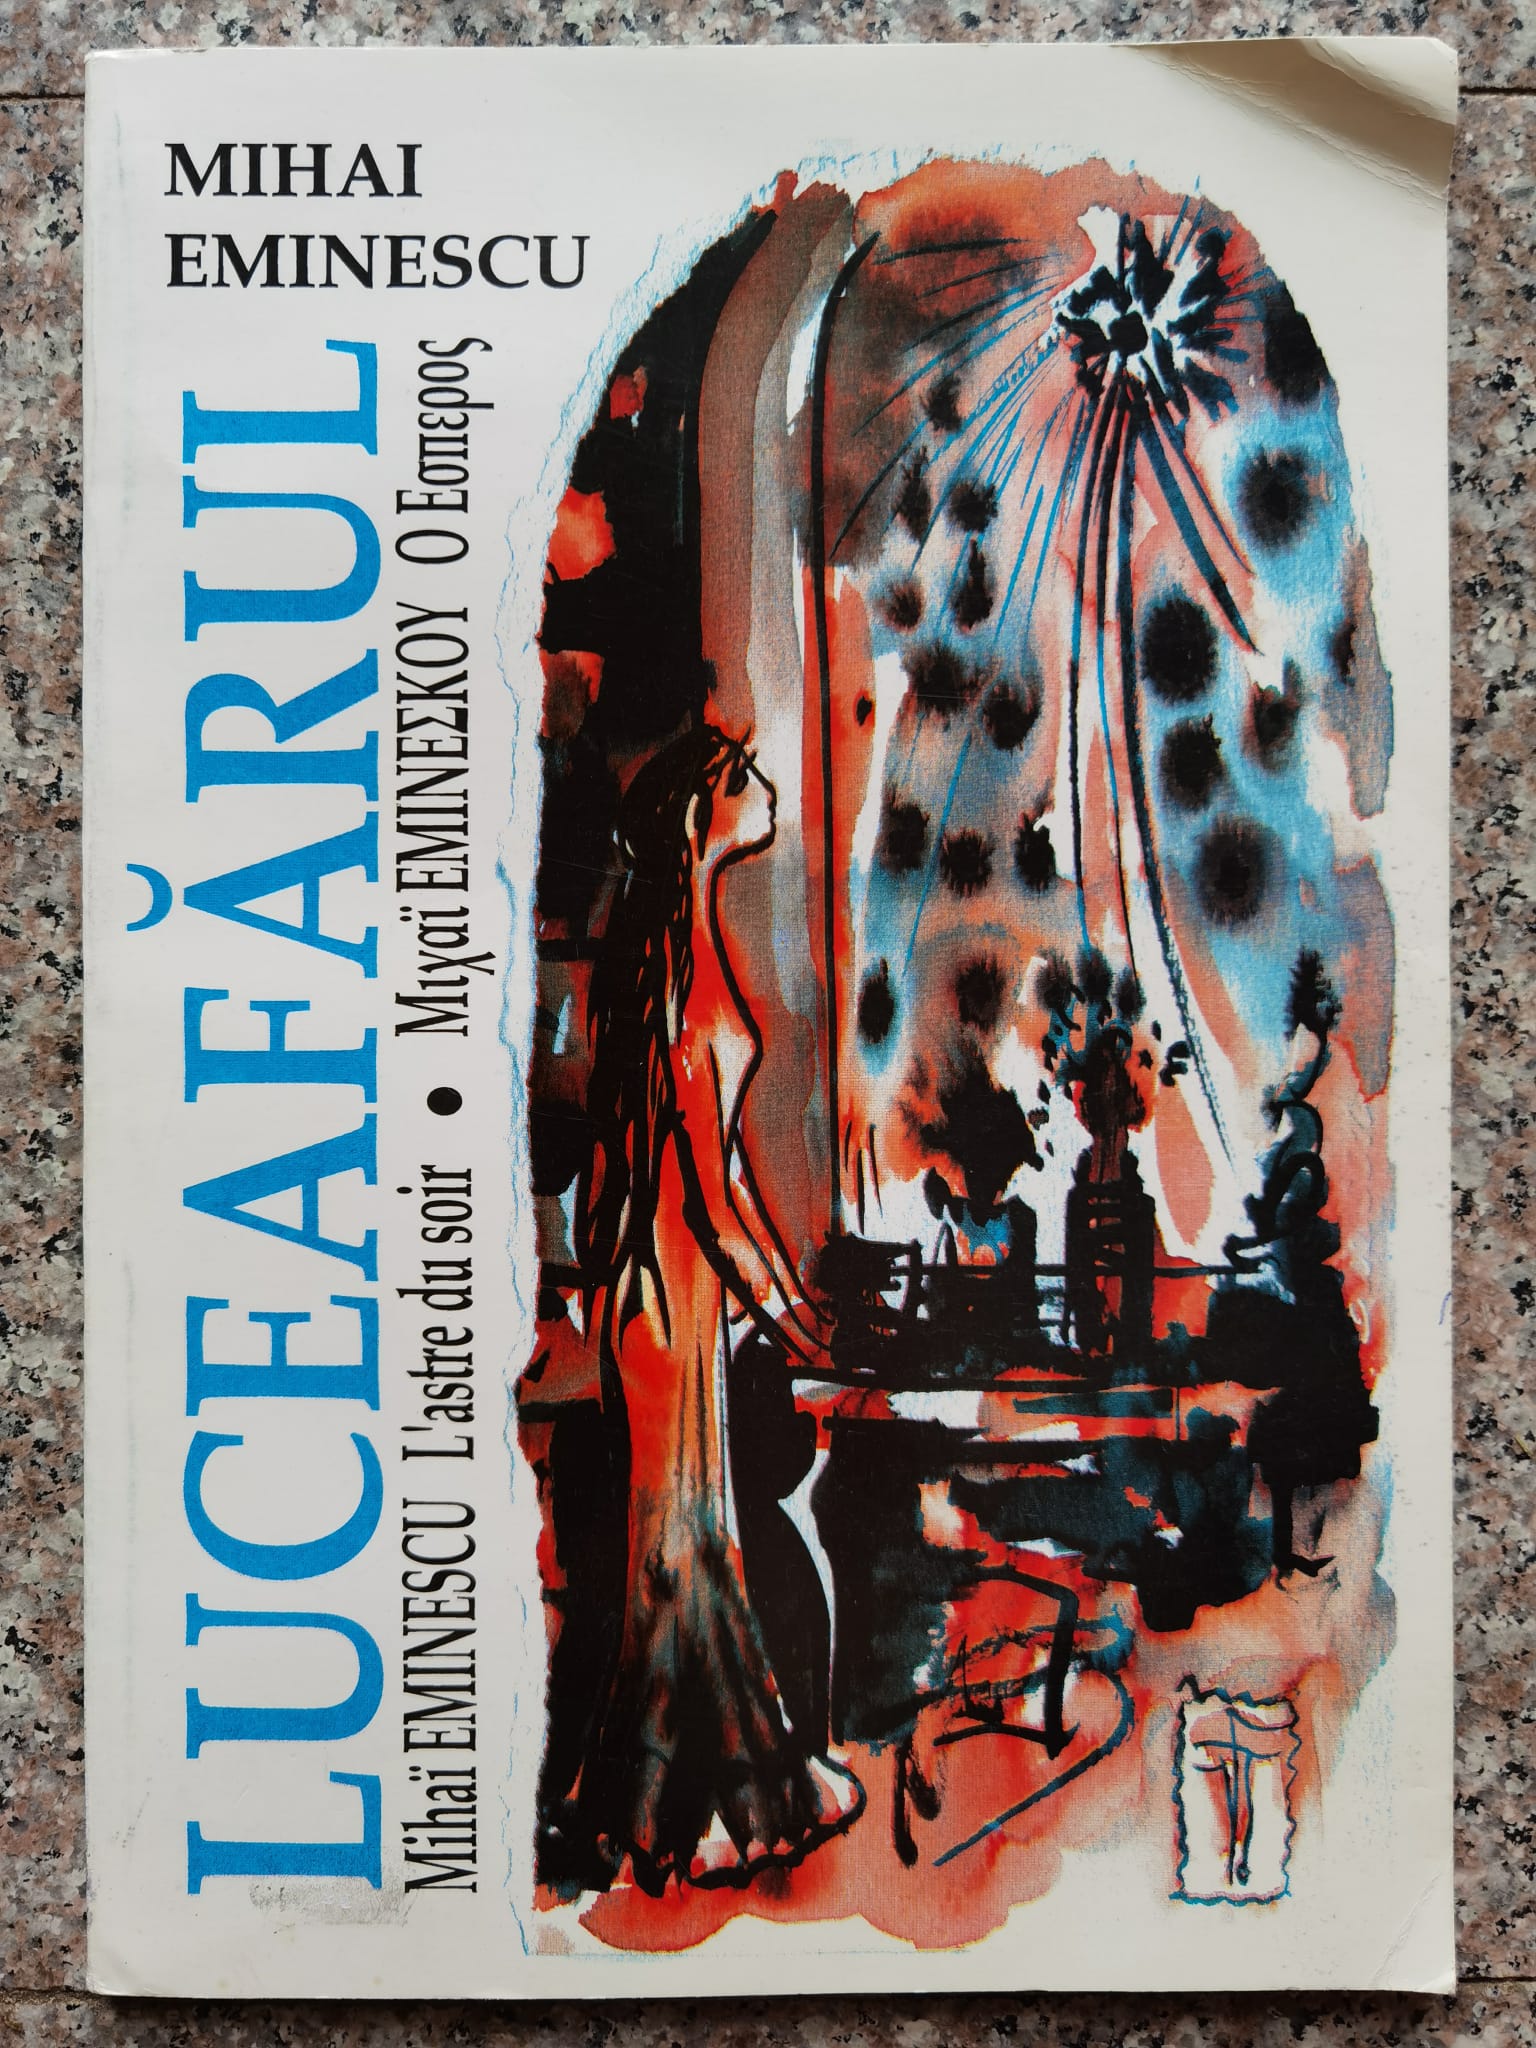 luceafarul editie trilingva romana/franceza/greaca                                                   mihai eminescu                                                                                      